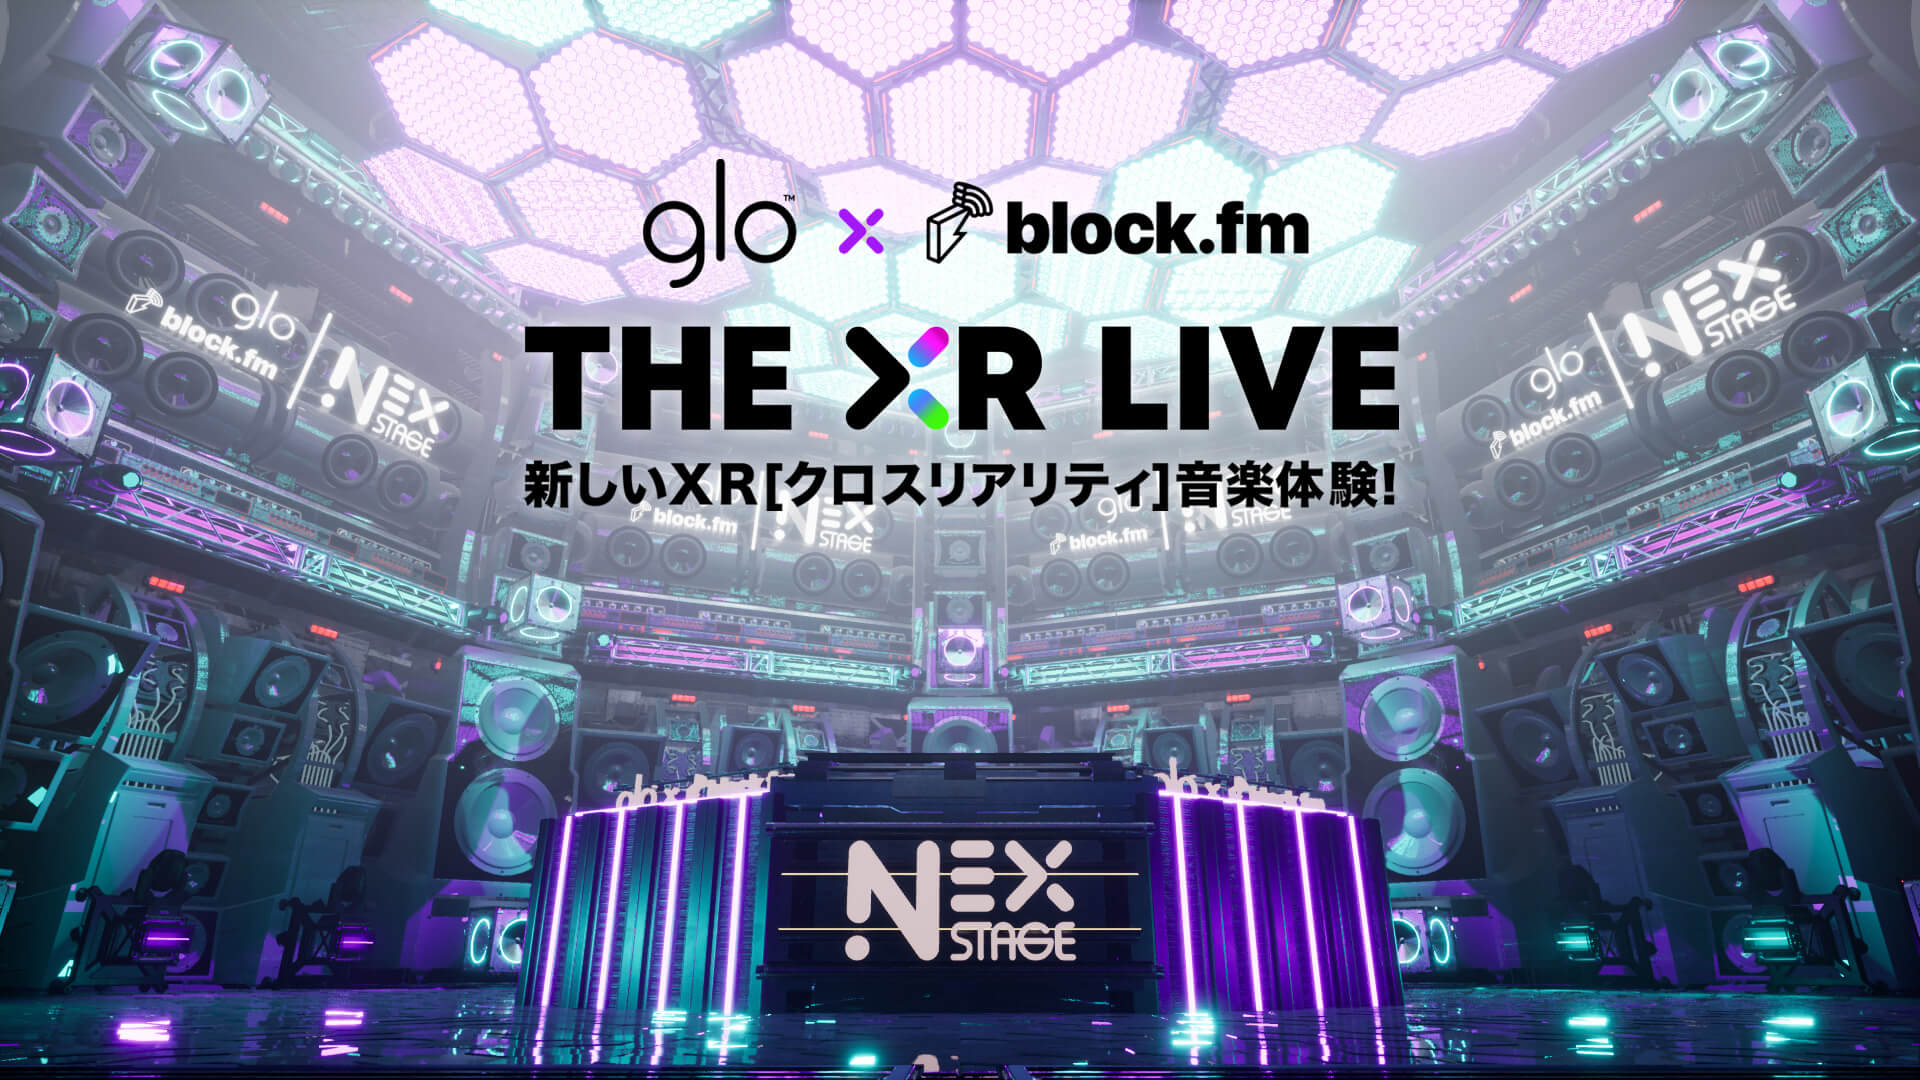 大沢伸一、田中知之、☆Taku Takahashiによるravexがglo™ × block. fm “NEX STAGE”にて復活！DÉ DÉ MOUSE、YOJI BIOMEHANIKAも登場 music_220118_glo_blockfm_04